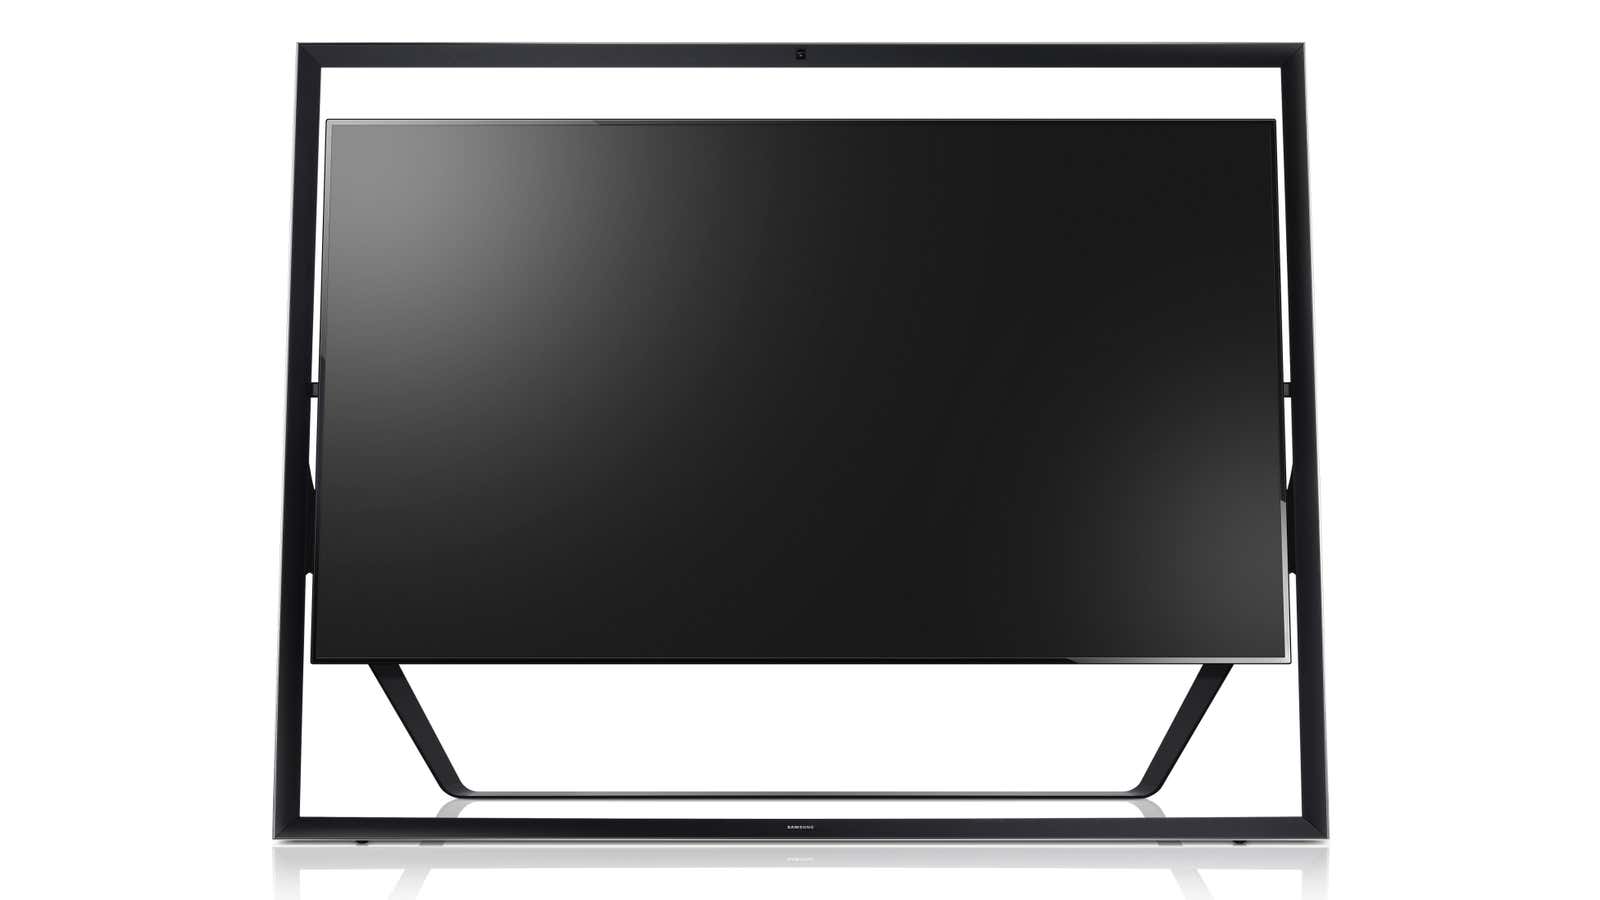 Yes, it’s an 85-inch TV, and no, it does not have a retail price yet.